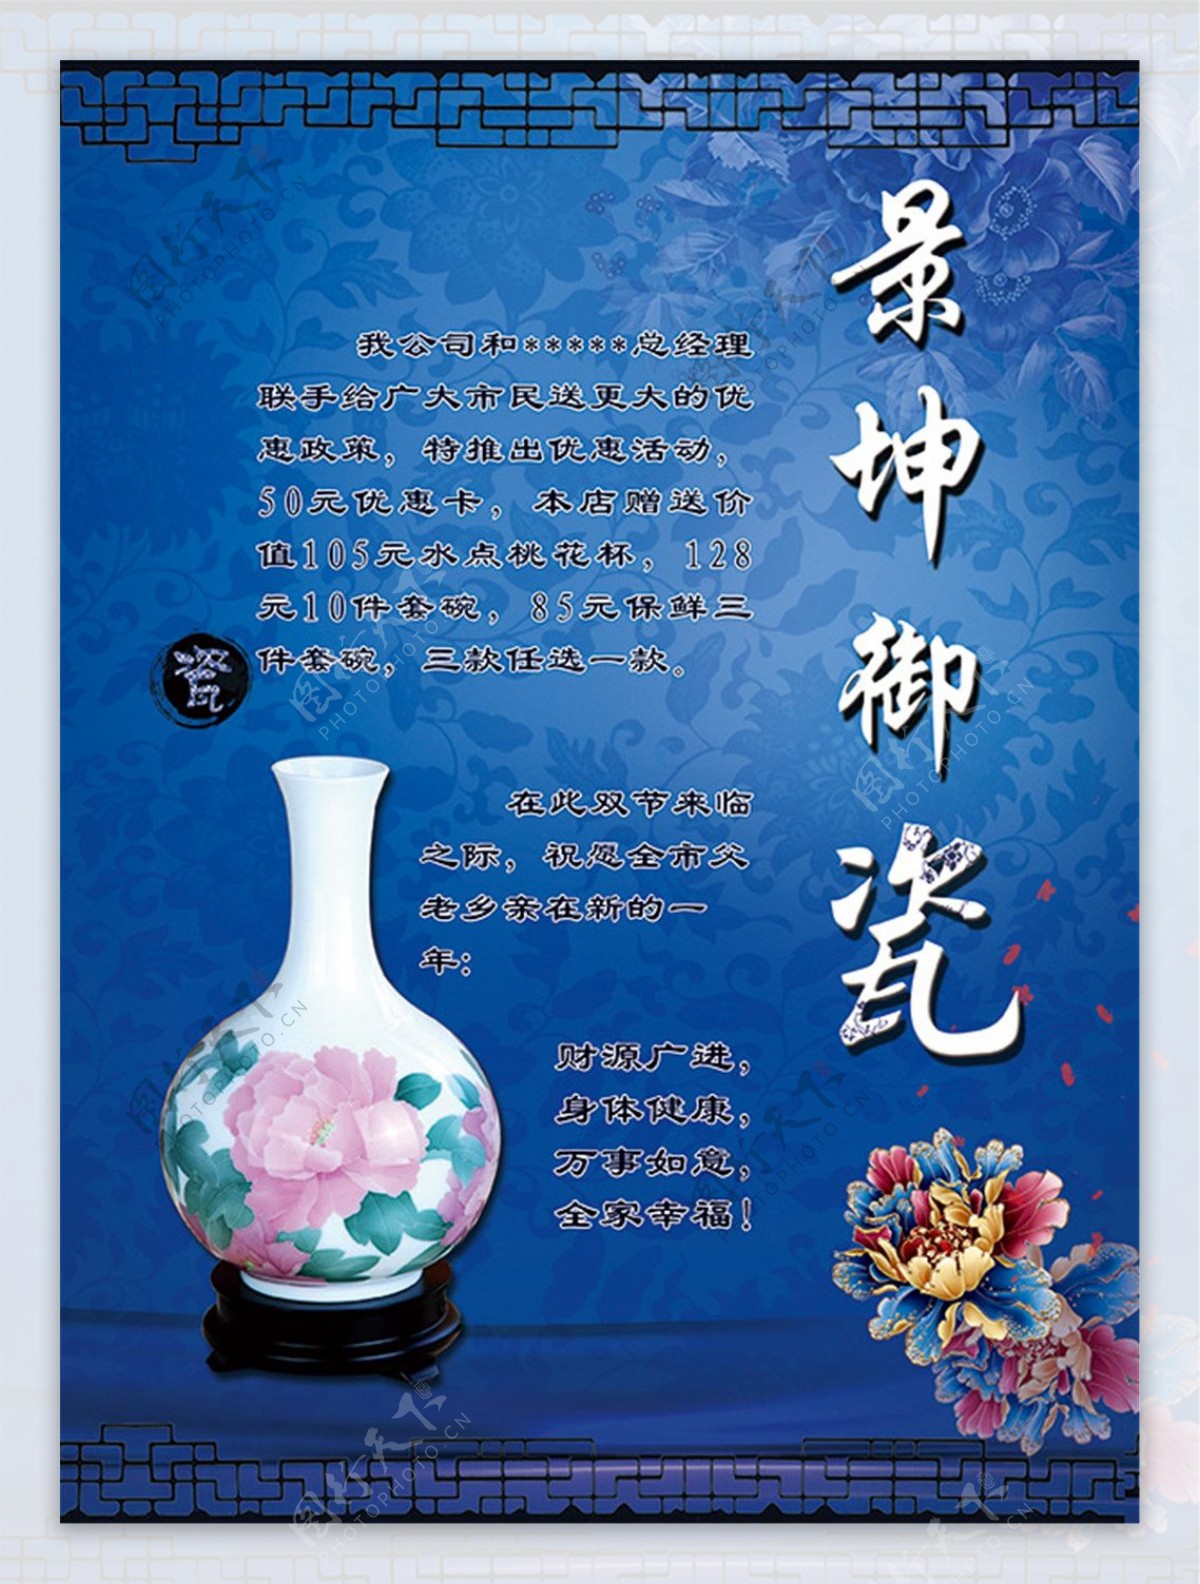 中国风瓷器促销宣传单PSD免费模板